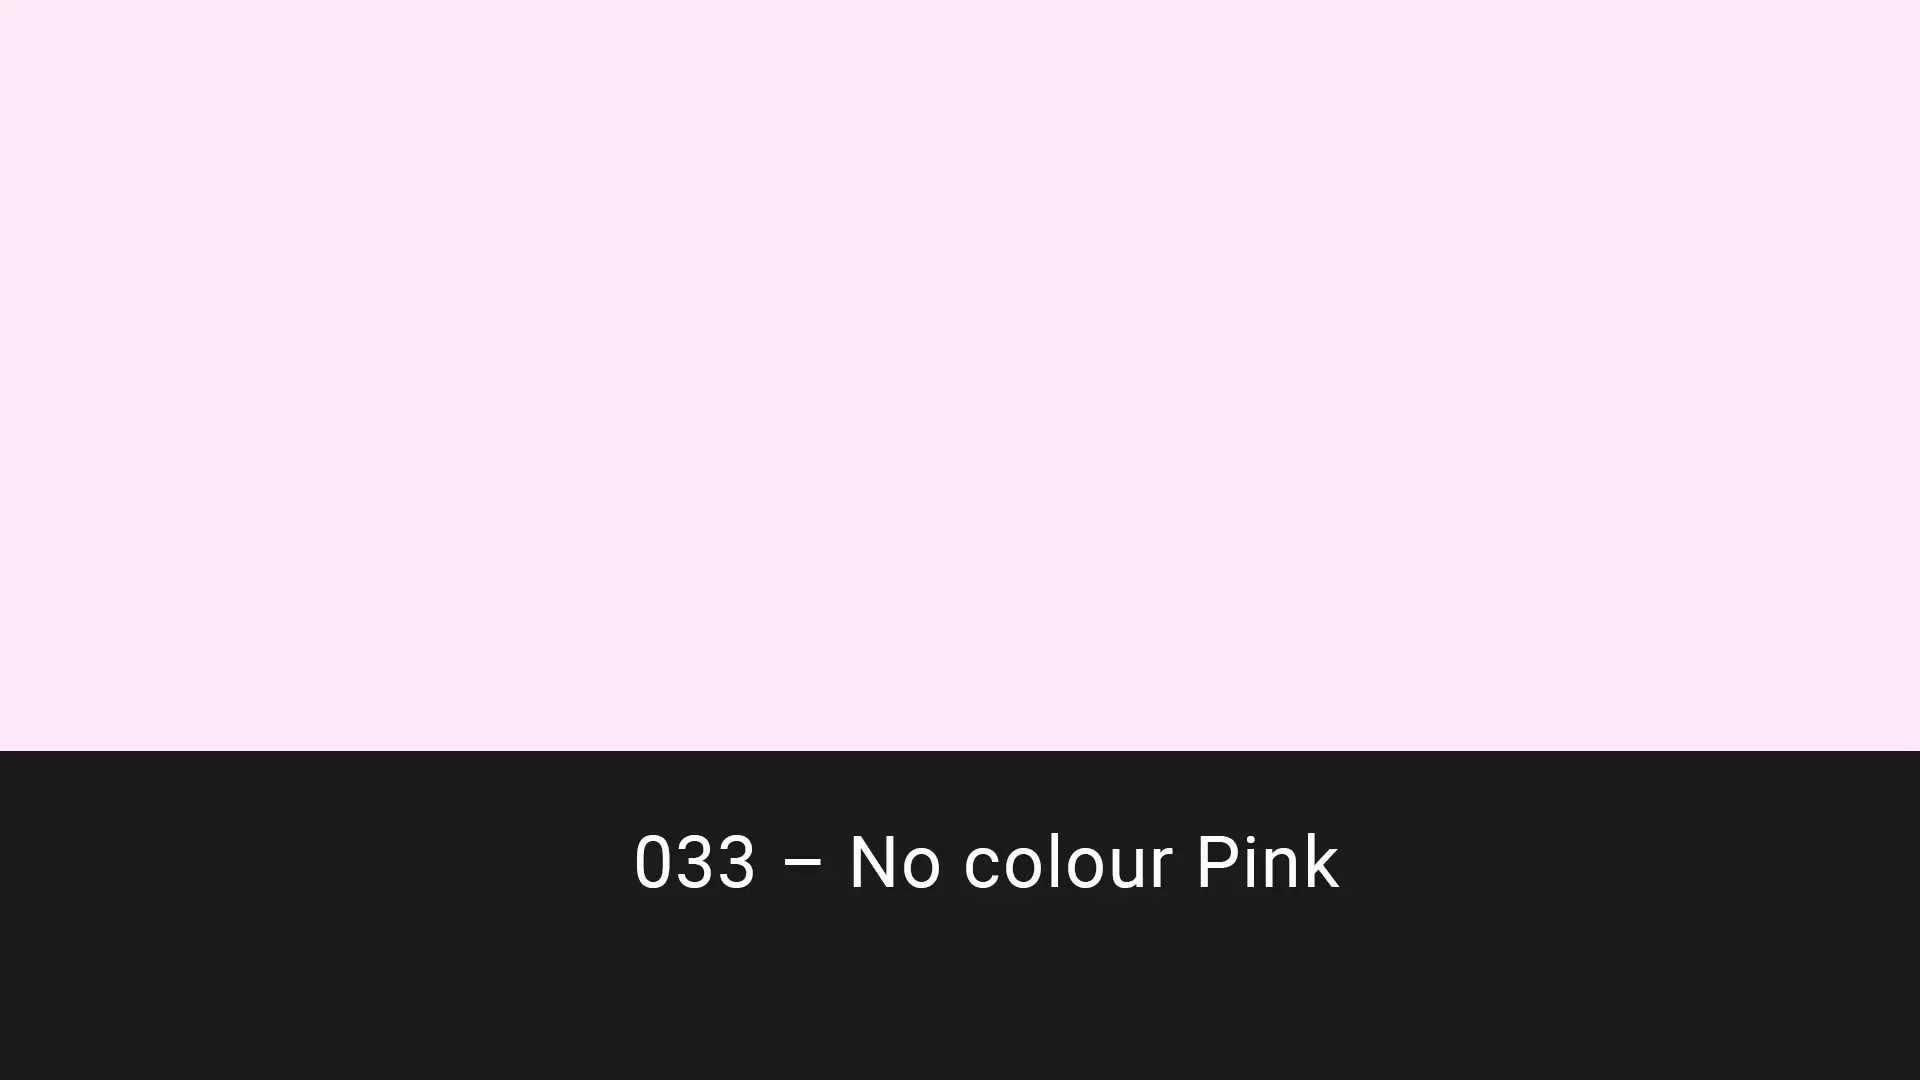 Cotech filters 033 No Colour Pink